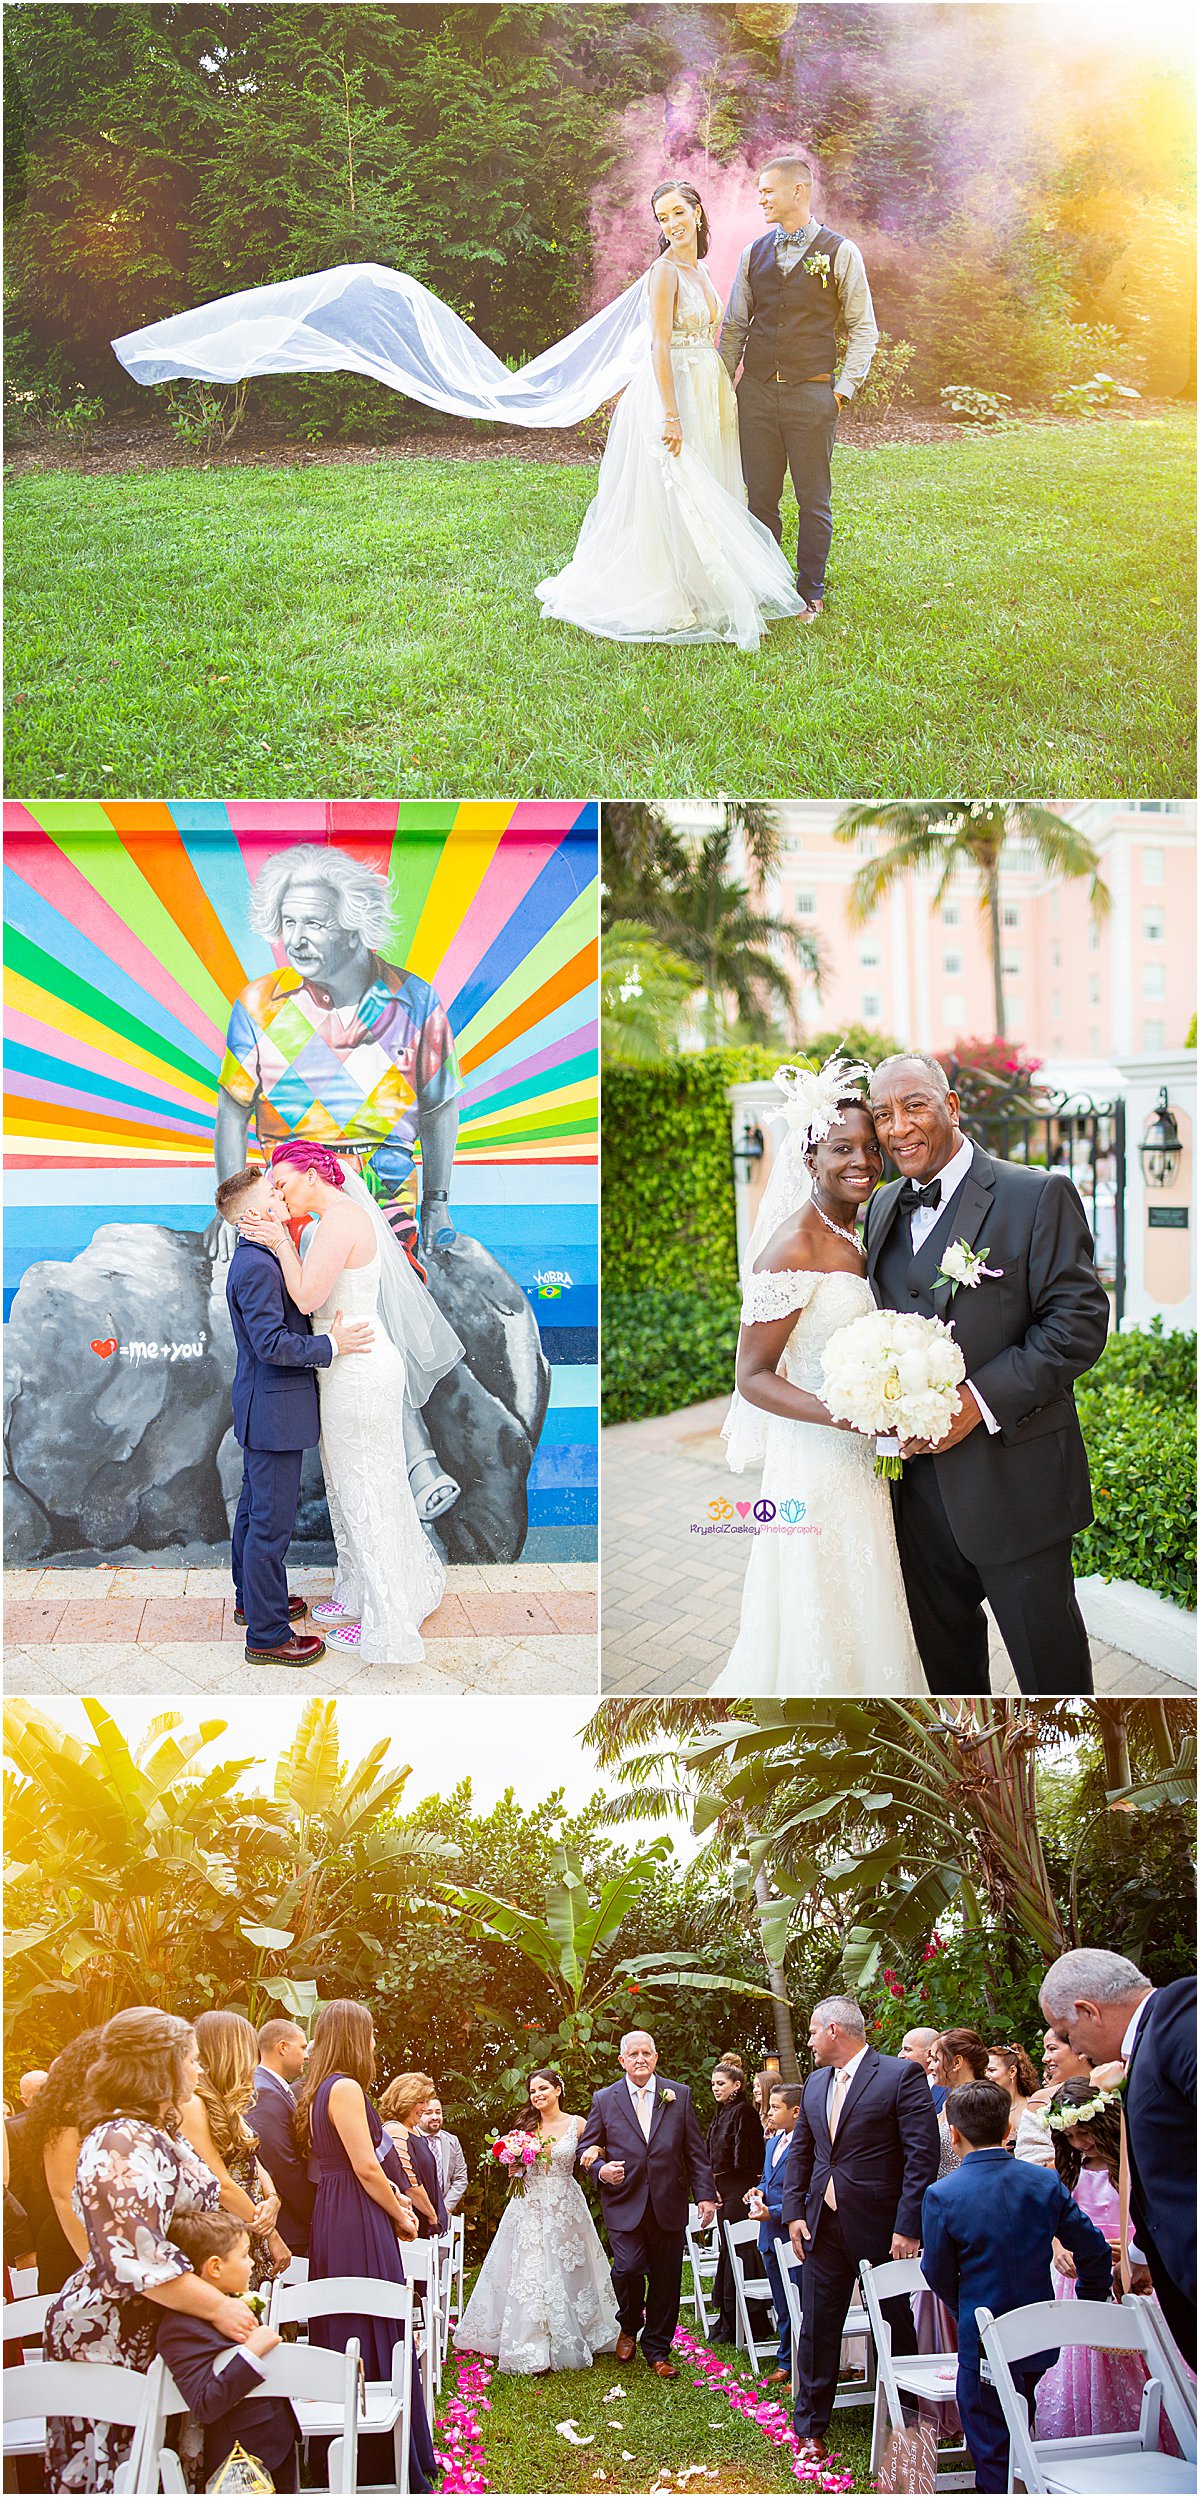 Top Palm Beach Wedding Photographers | Palm Beach, FL | Married in Palm Beach | www.marriedinpalmbeach.com | Krystal Zaskey Photography